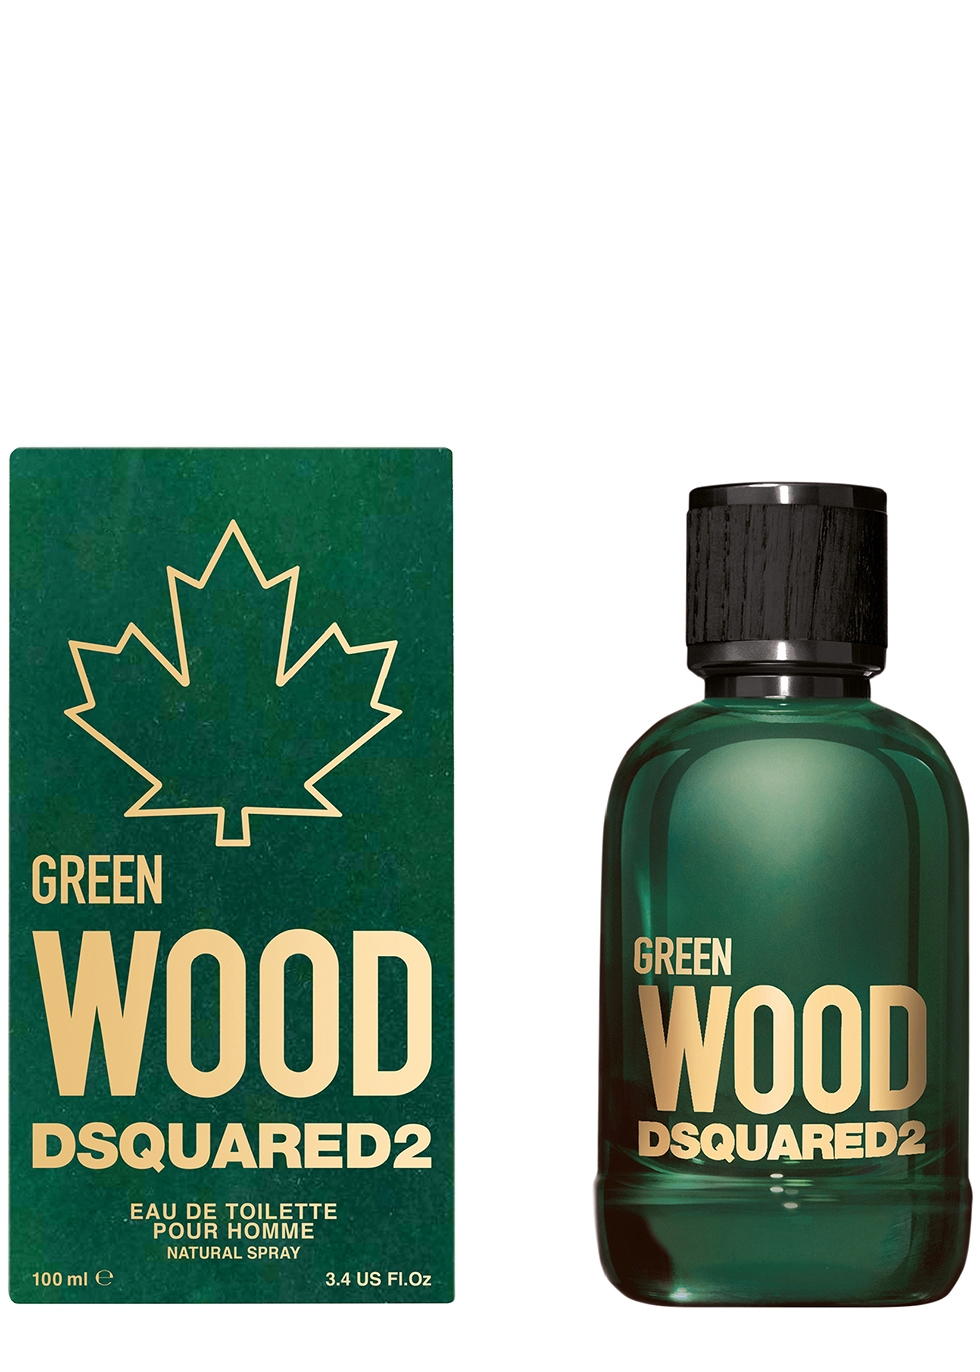 dsquared2 wood eau de parfum